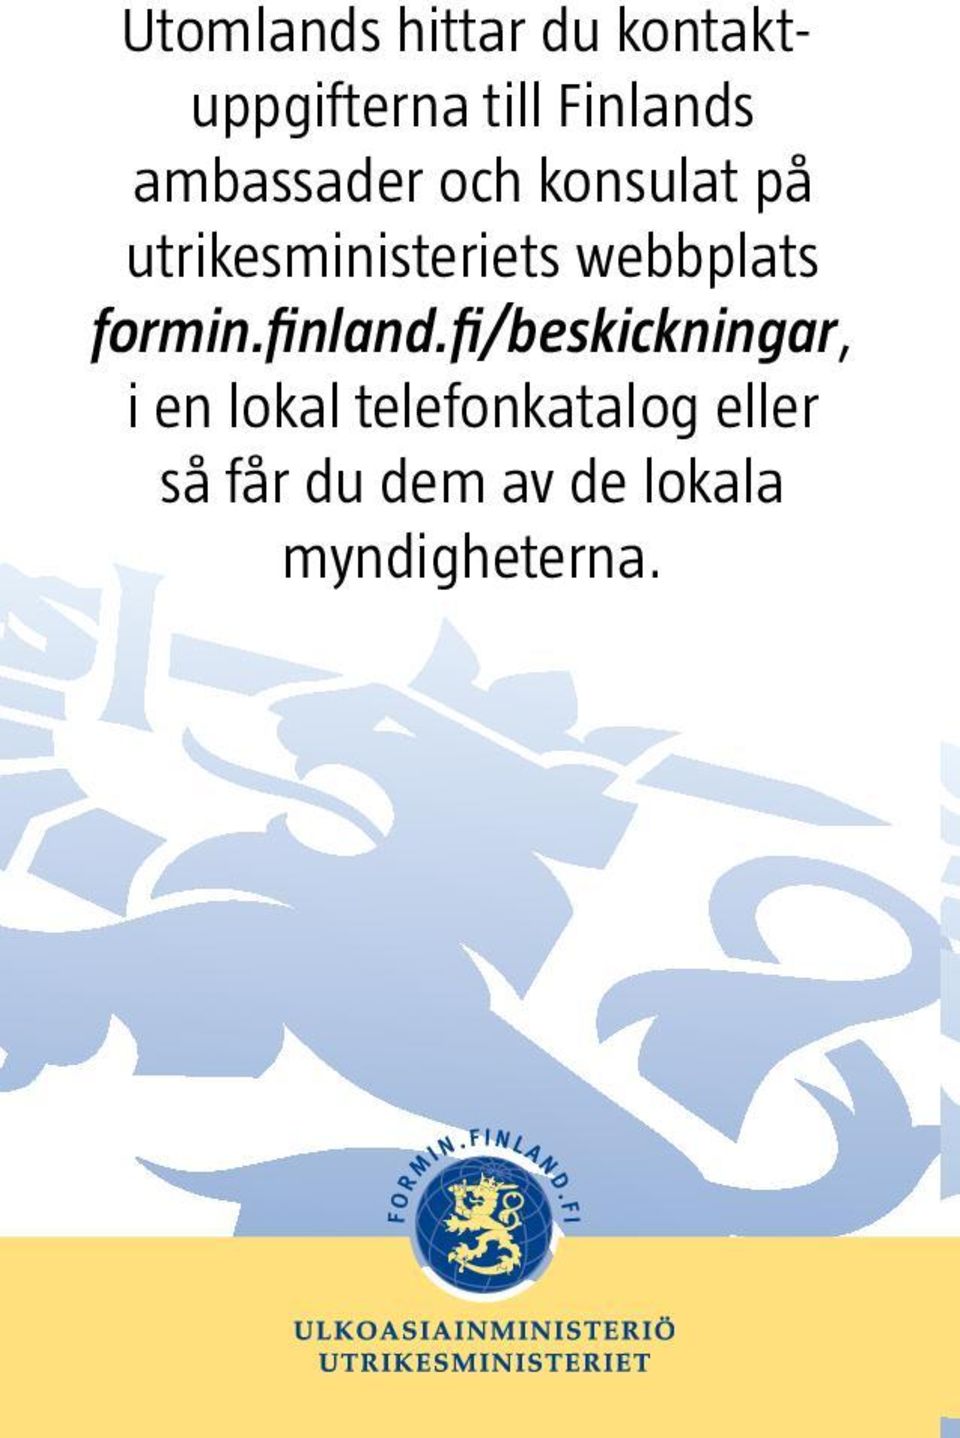 webbplats formin.finland.